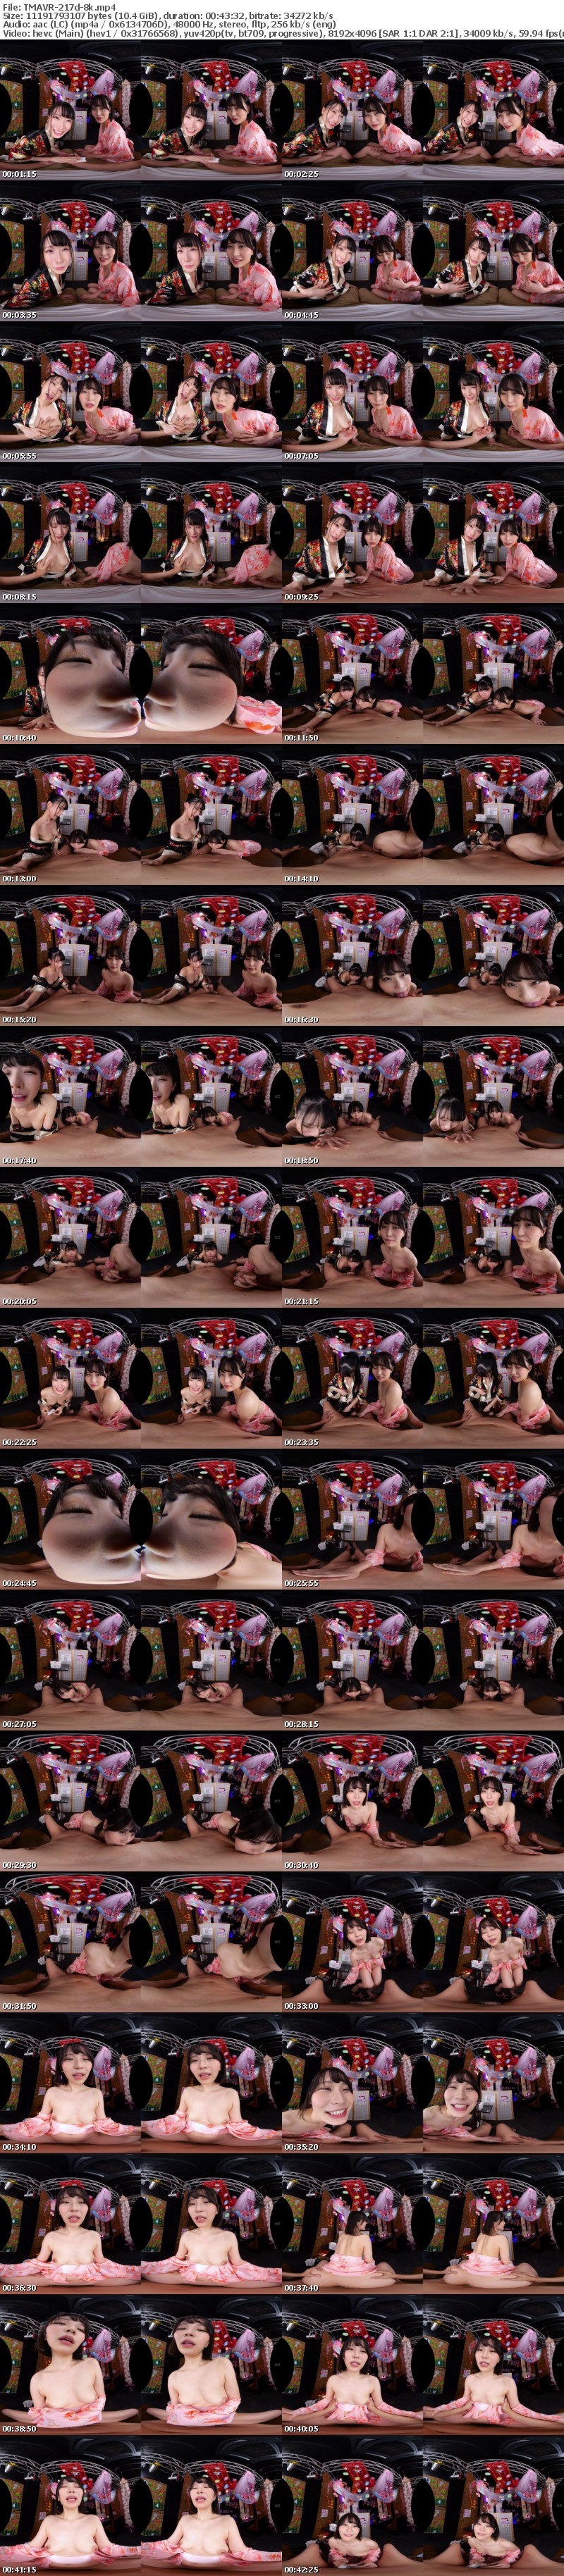 [VR] TMAVR-217 【VR】観光客に話題沸騰！インバウンド風俗花魁系ピンサロ『OMOTENASHI』裏オプ黙認で爆ヌキ花びら回転！抜きまくりヤリまくりの生本番！